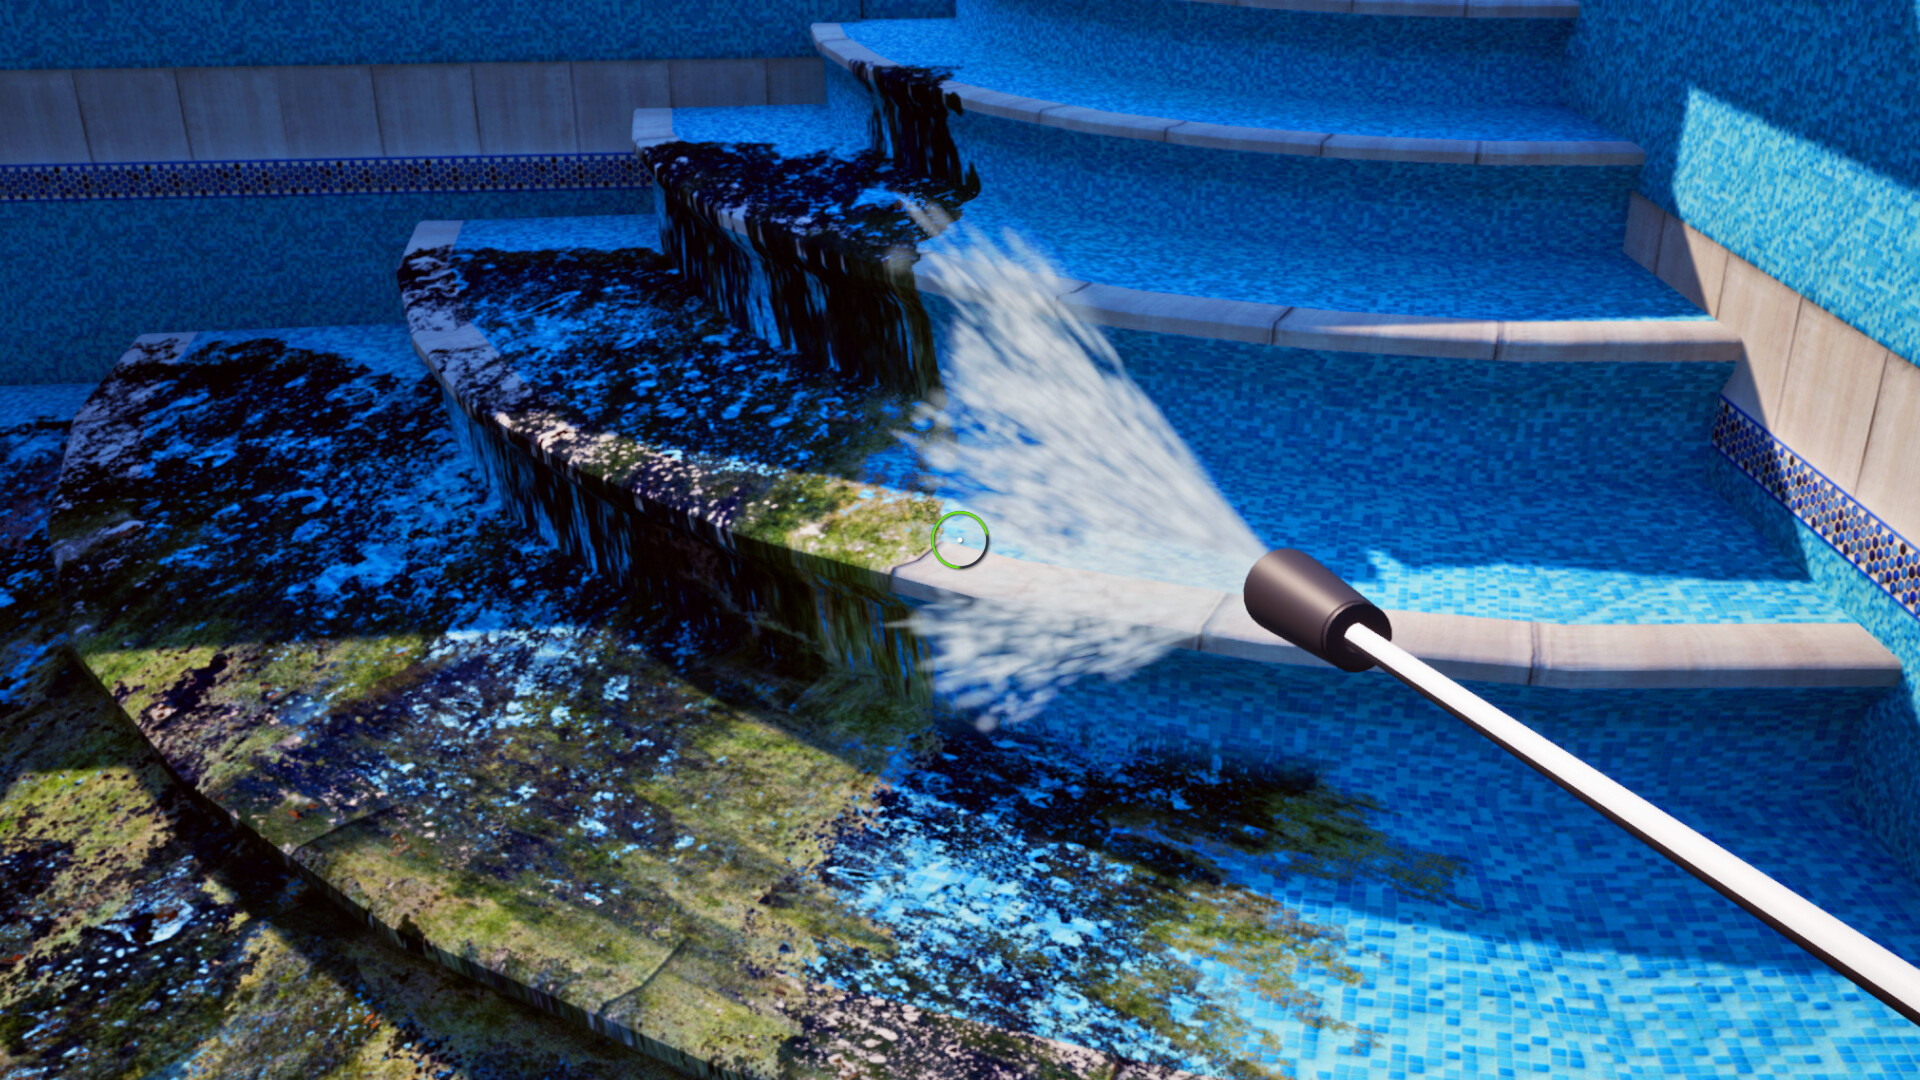 Pool Cleaning Simulator - screenshot 4